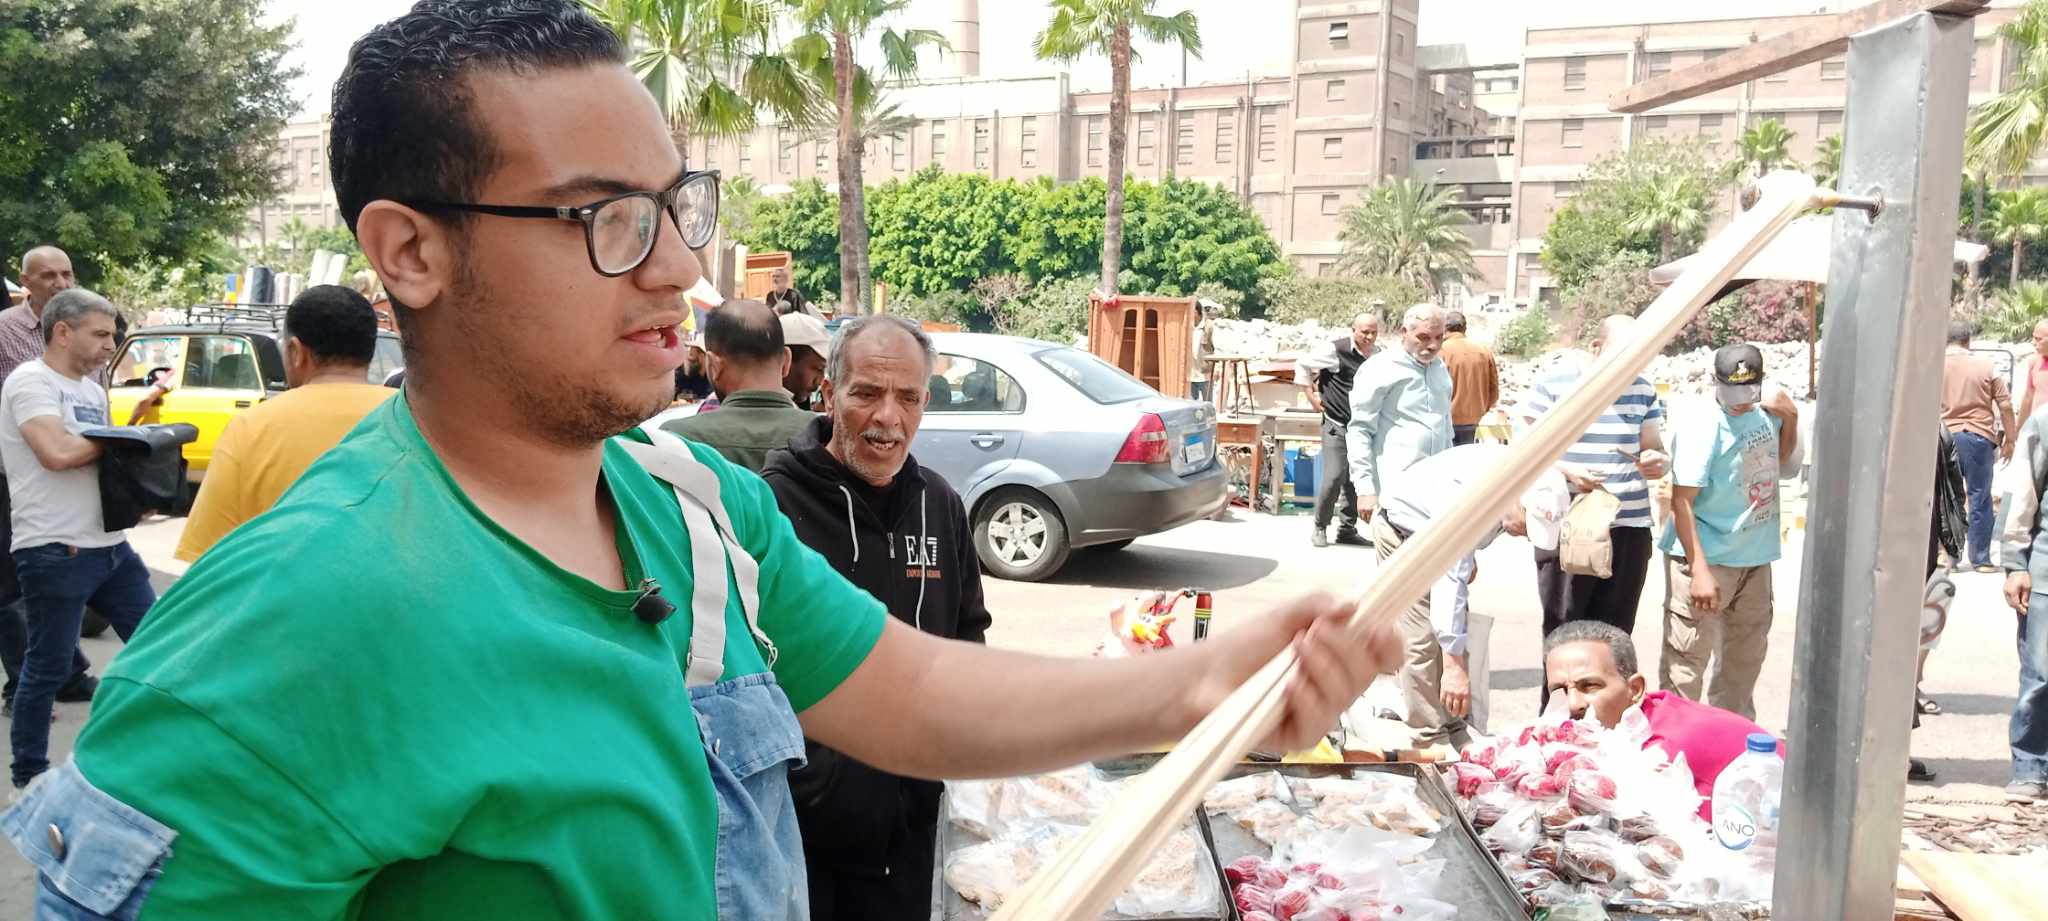 مهنة تصنيع العسلية في الإسكندرية